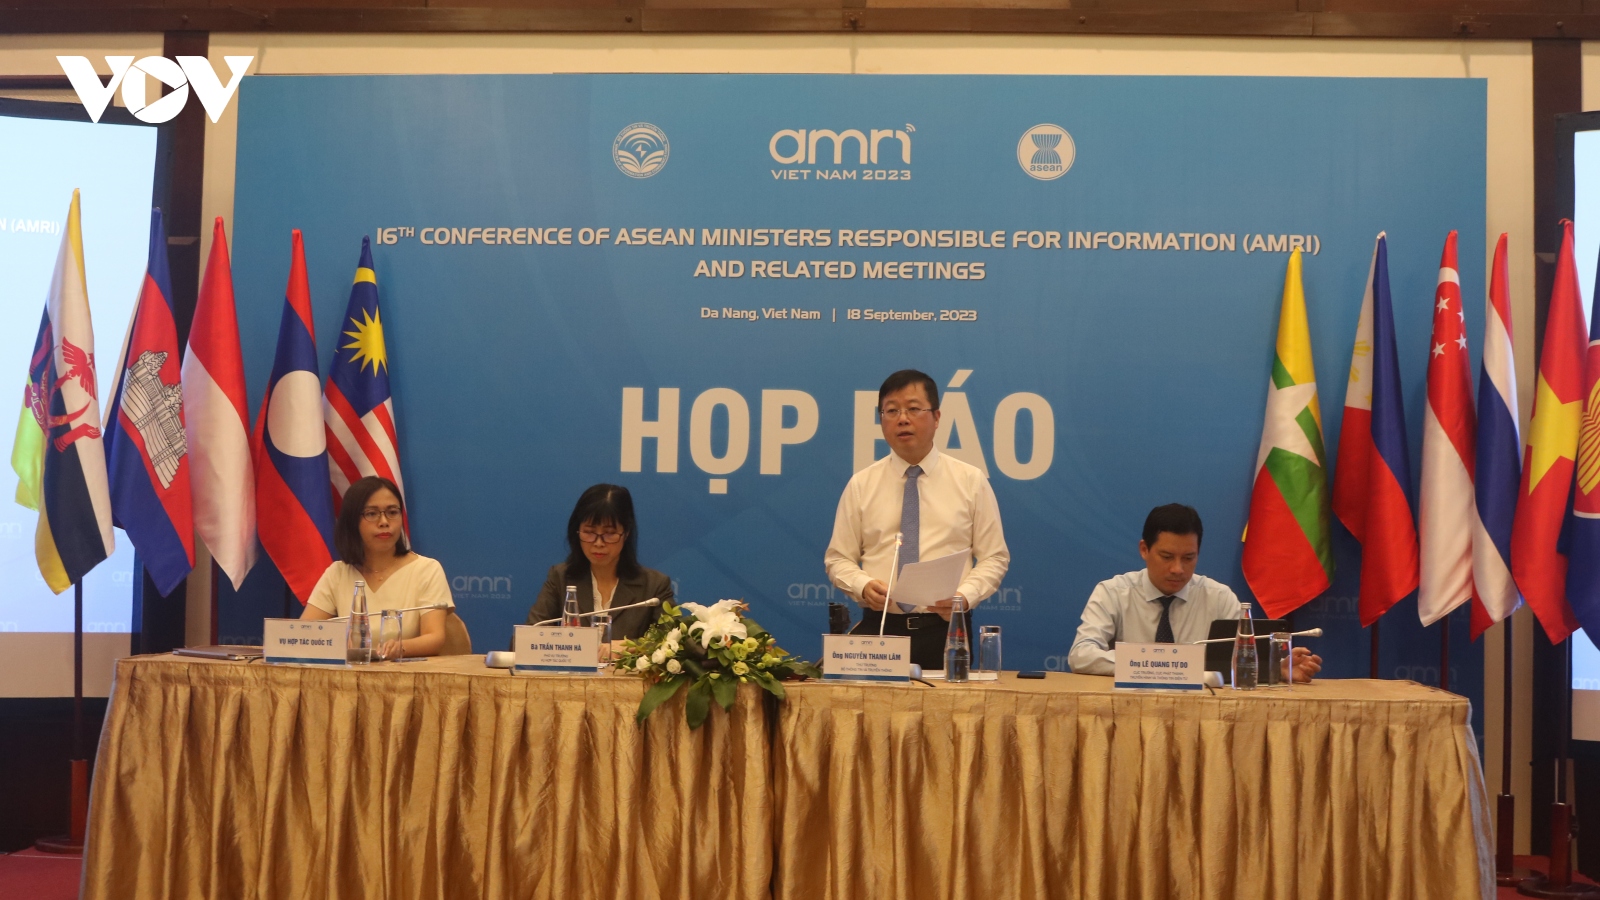 Hội nghị Bộ trưởng Thông tin ASEAN lần thứ 16 diễn ra tại Đà Nẵng từ 20-23/9/2023